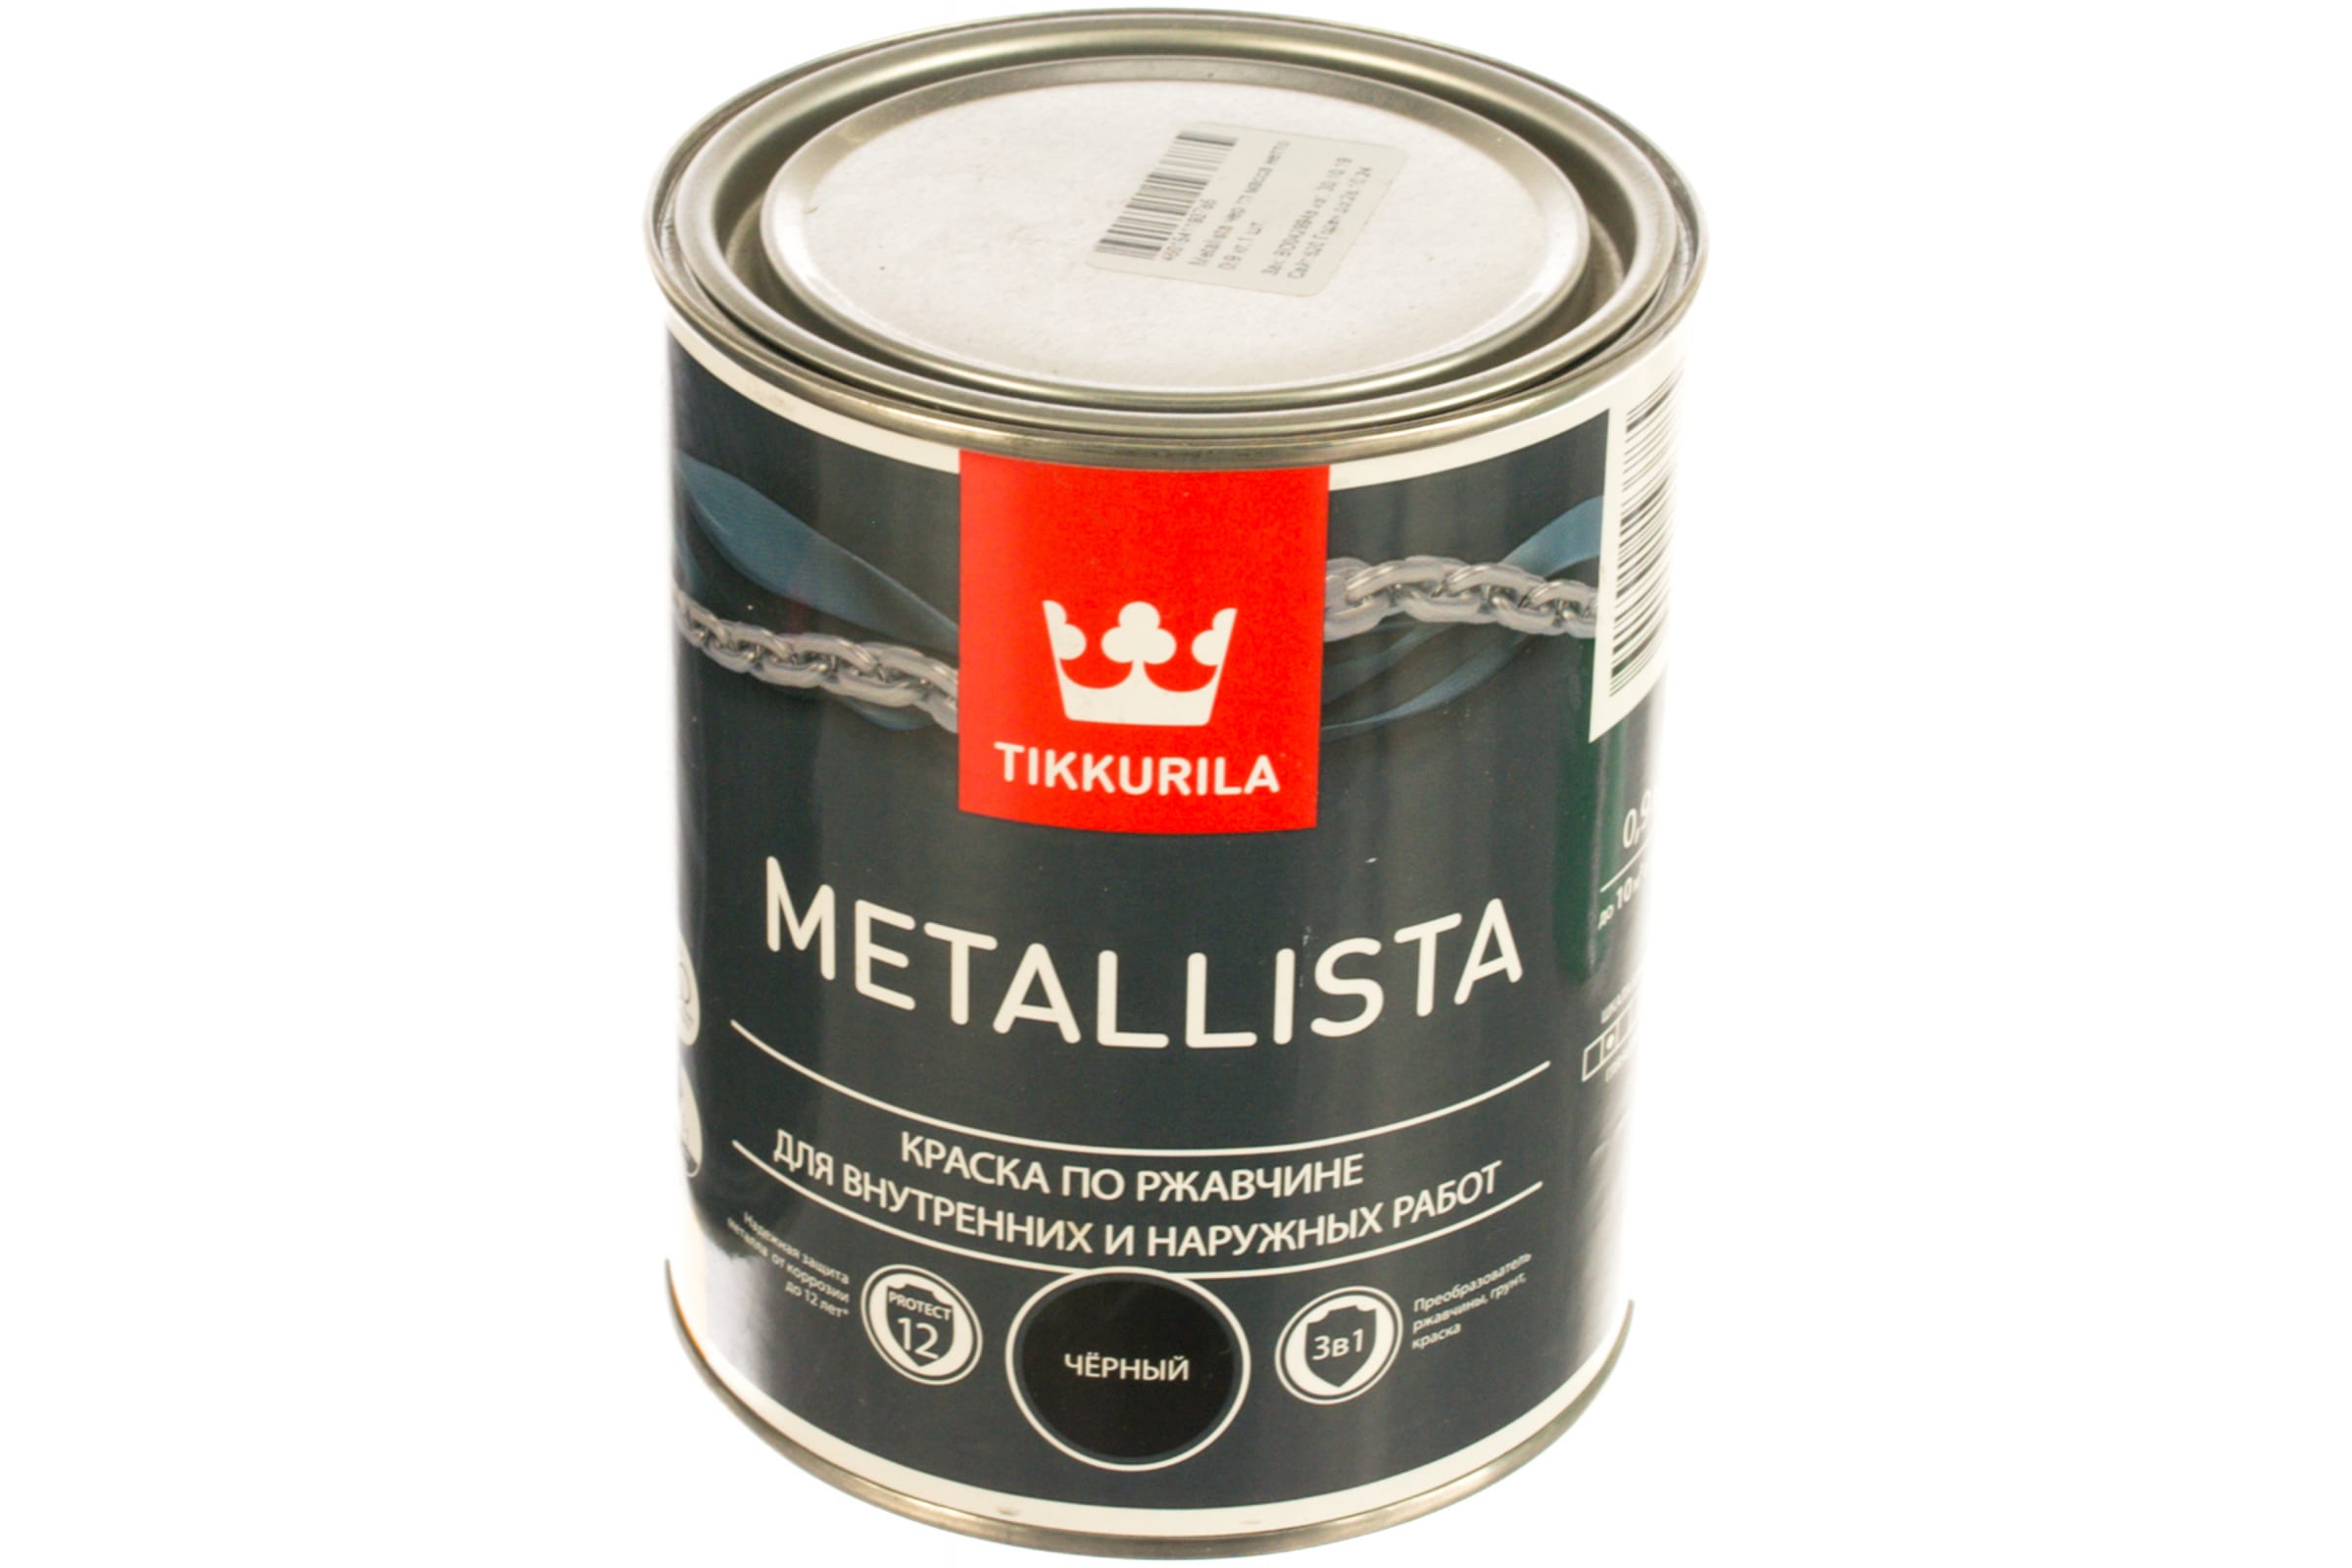 Tikkurila metallista 3 в 1. Краска metallista Tikkurila черная. Краска по ржавчине 3 в 1 "metallista" "Тиккурила". Краска по ржавчине 3 в 1 Tikkurila metallista молотковая.